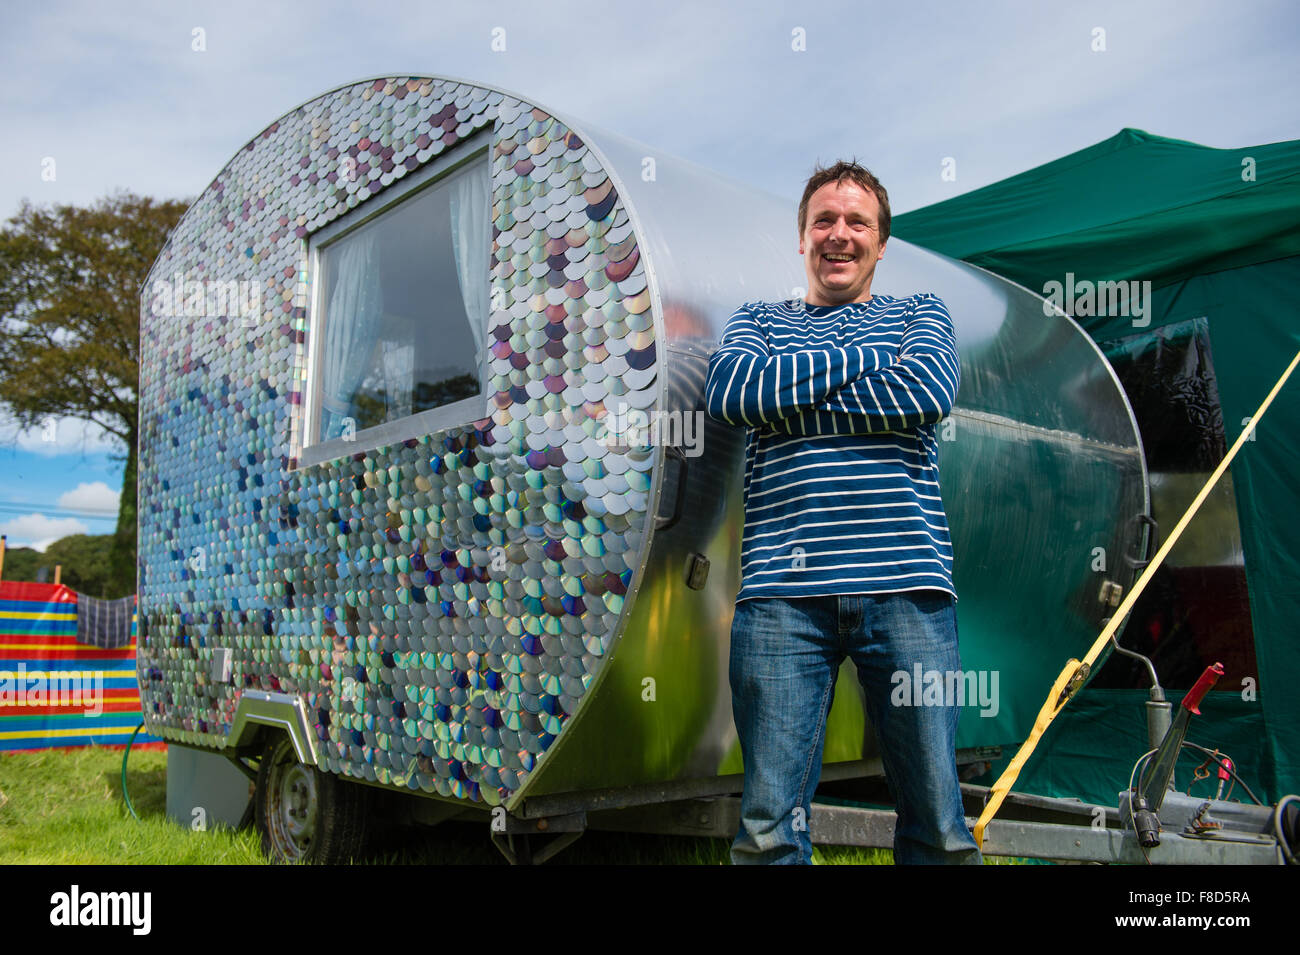 El artesano y el maker Carwyn Lloyd Jones, de pie fuera de su pequeña caravana con armazón de madera que él mismo hizo de madera de desecho rescatado y cubiertos en el exterior con discos compactos reciclados, Gales Aberystwyth UK Foto de stock